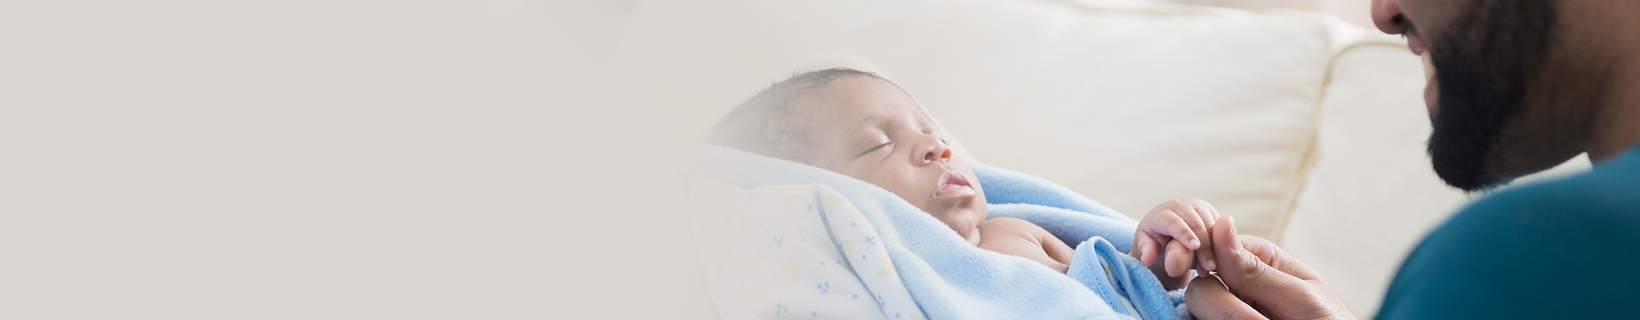 Baby care - Baby sleep - swaddling